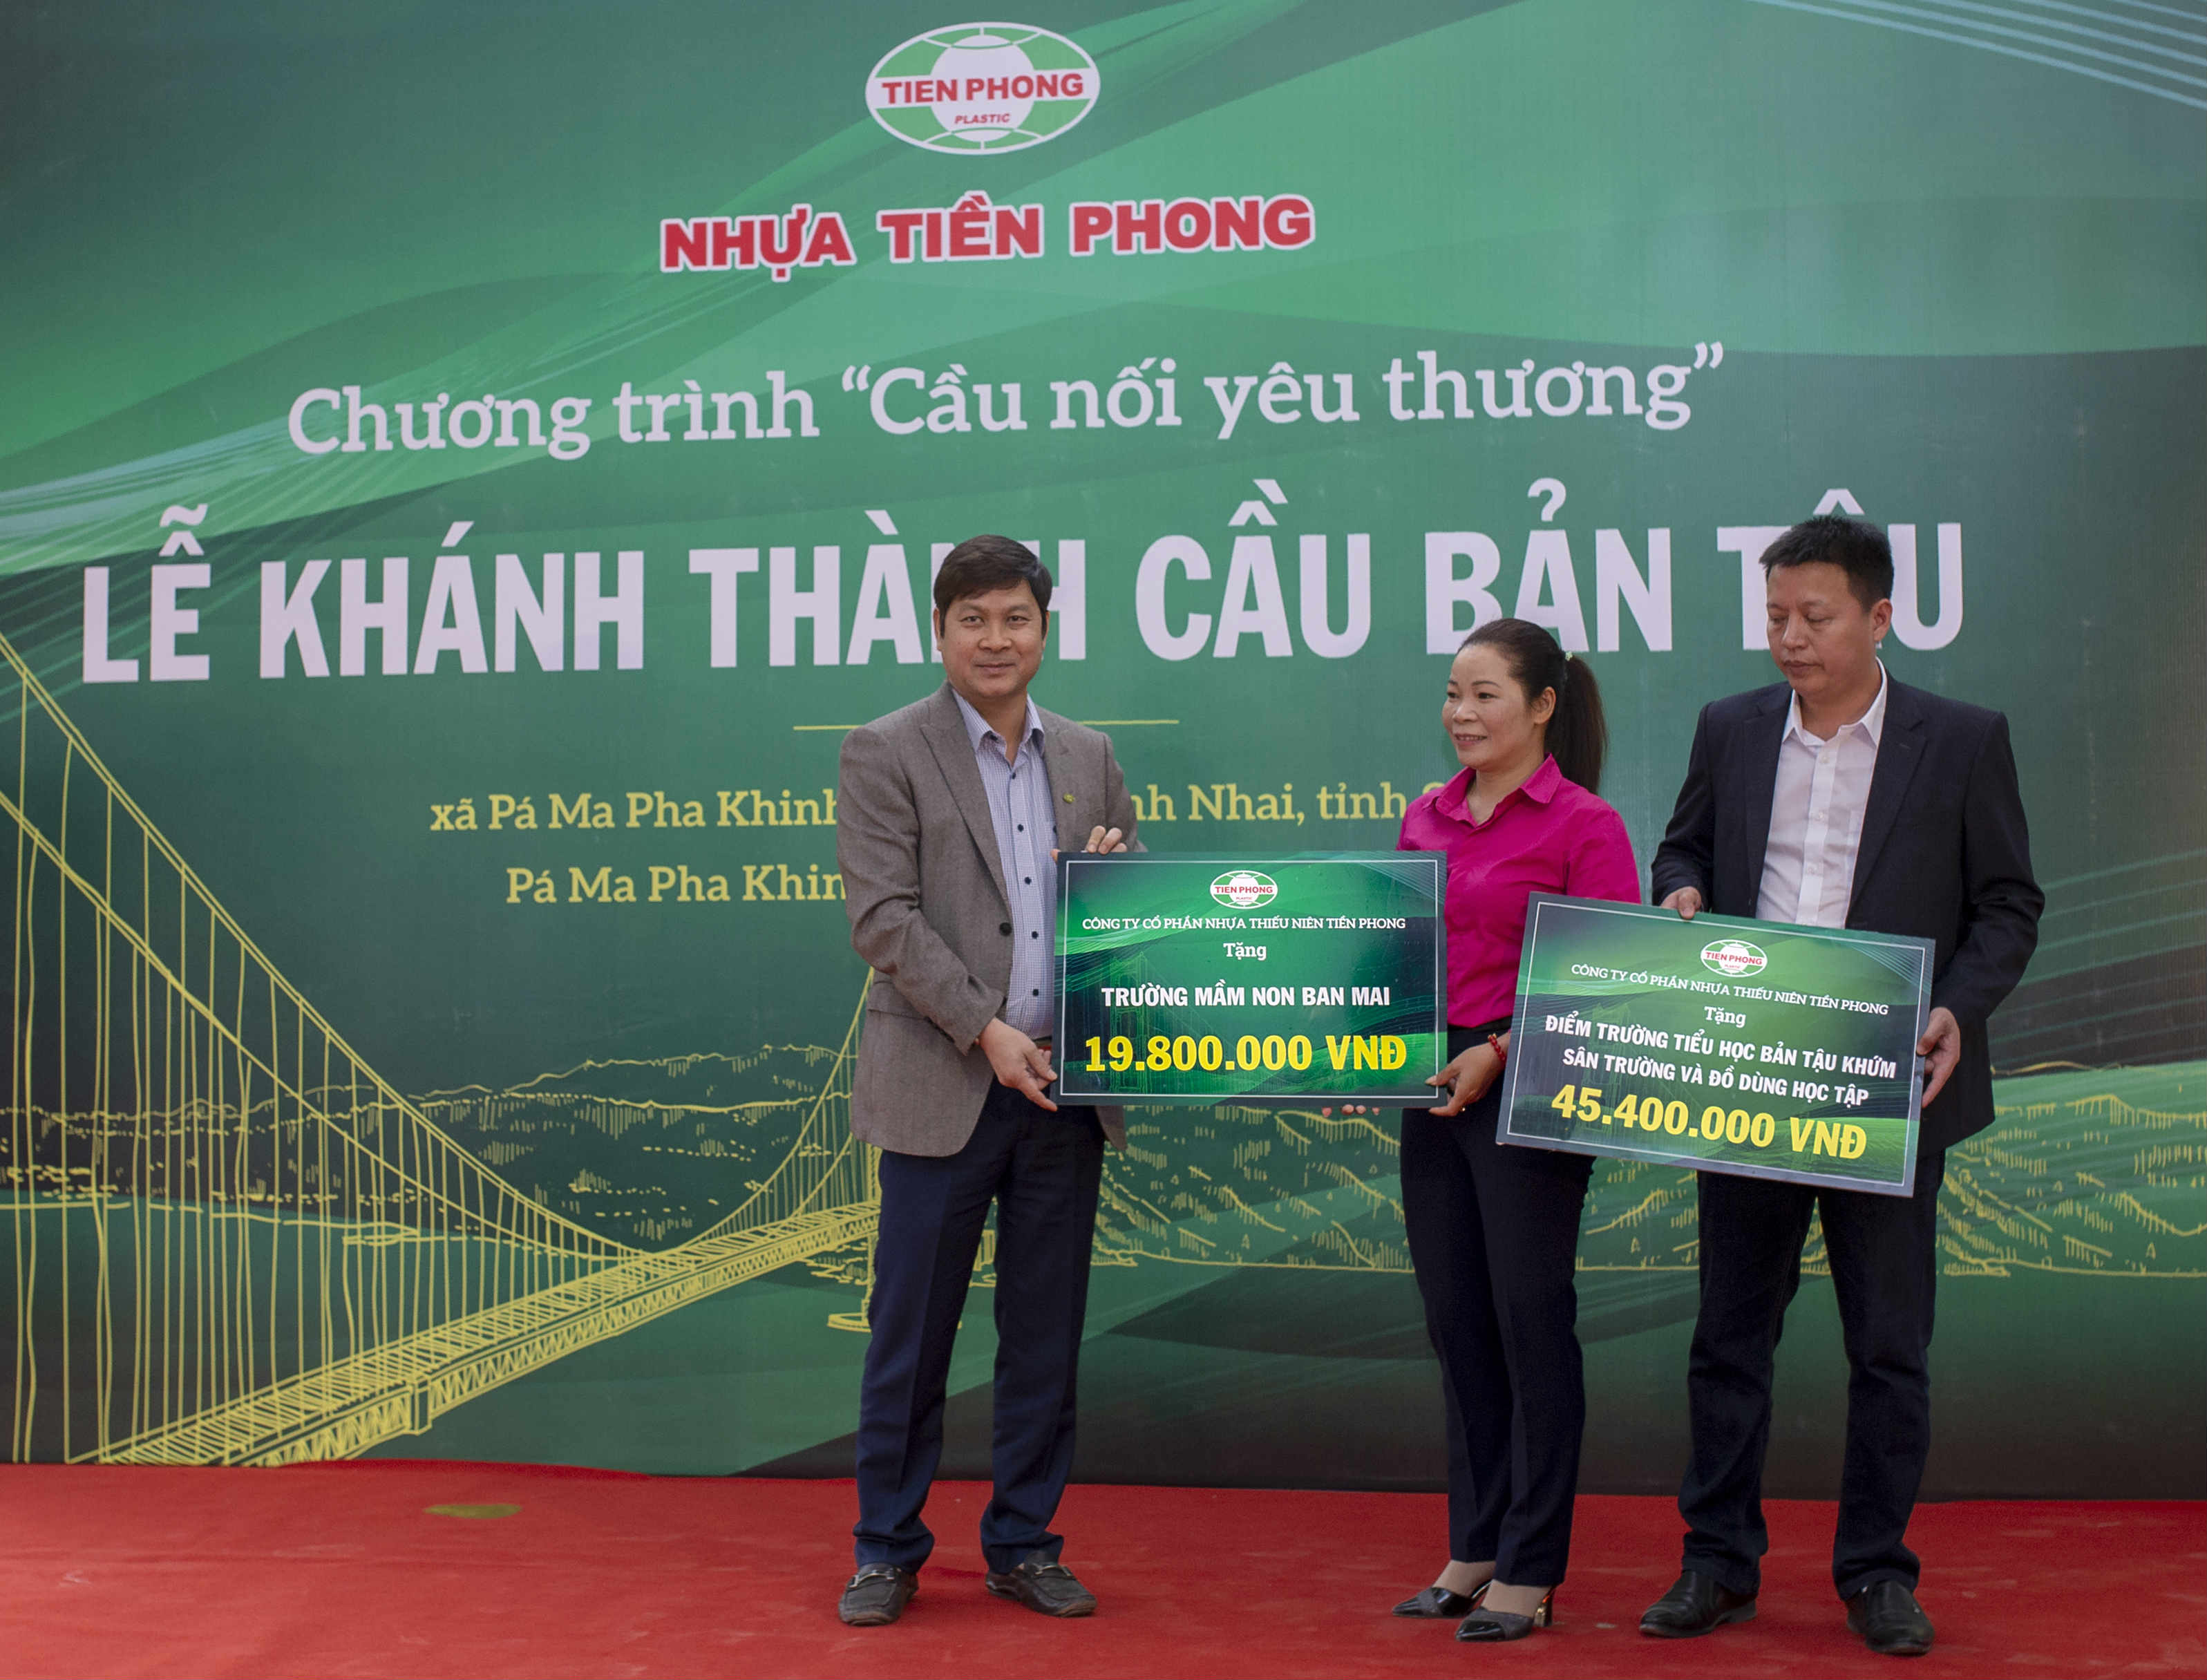 Ông Chu Văn Phương, Tổng giám đốc Nhựa Tiền Phong trao tặng quà cho các điểm trường tại xã Pá Ma Pha Kinh, huyện Quỳnh Nhai, Sơn La.